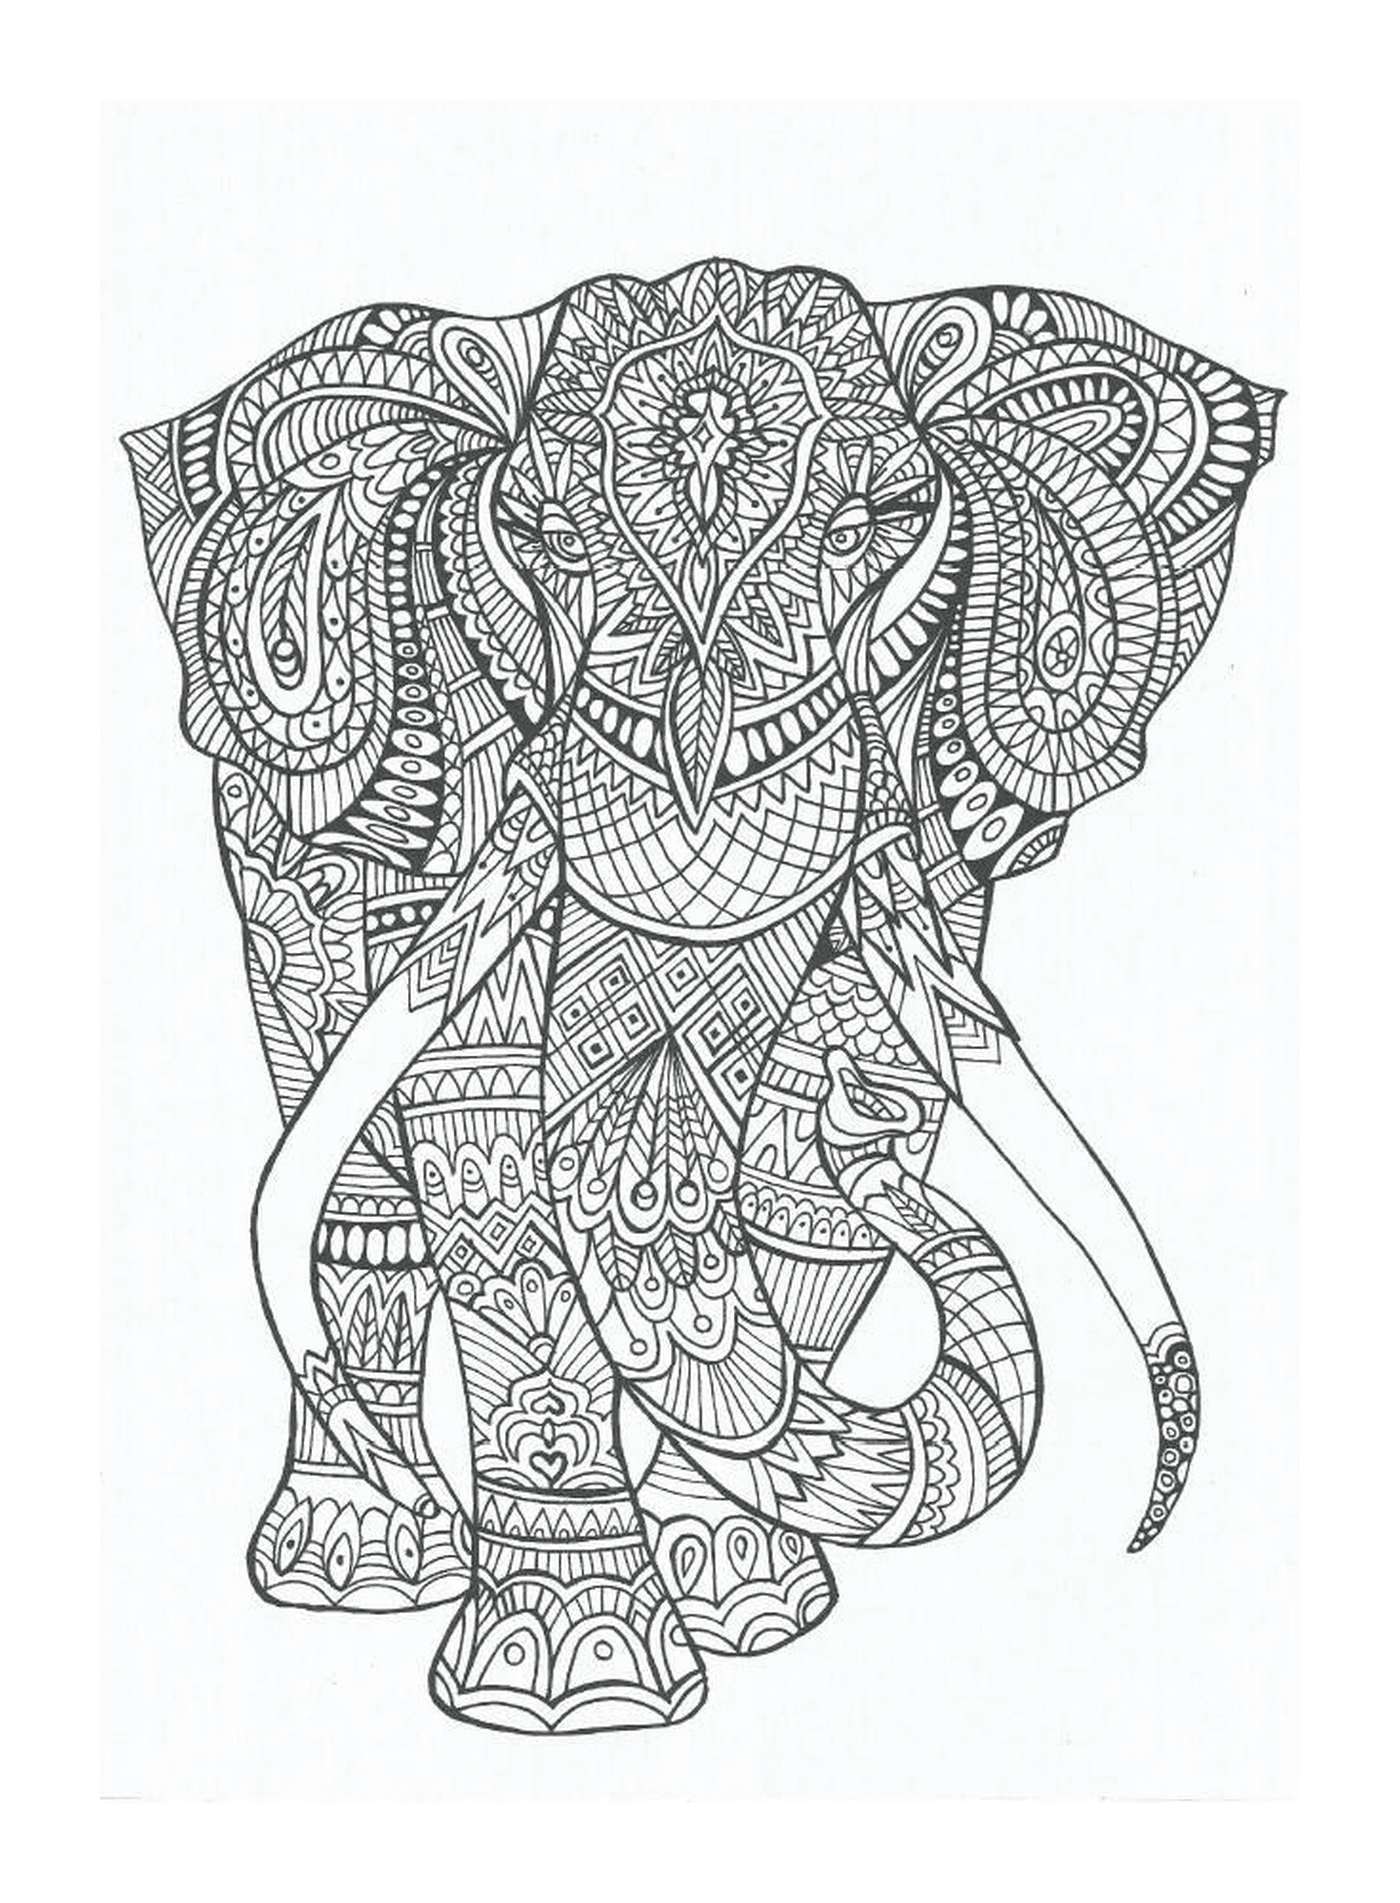  Un elefante decorado con mandalas 